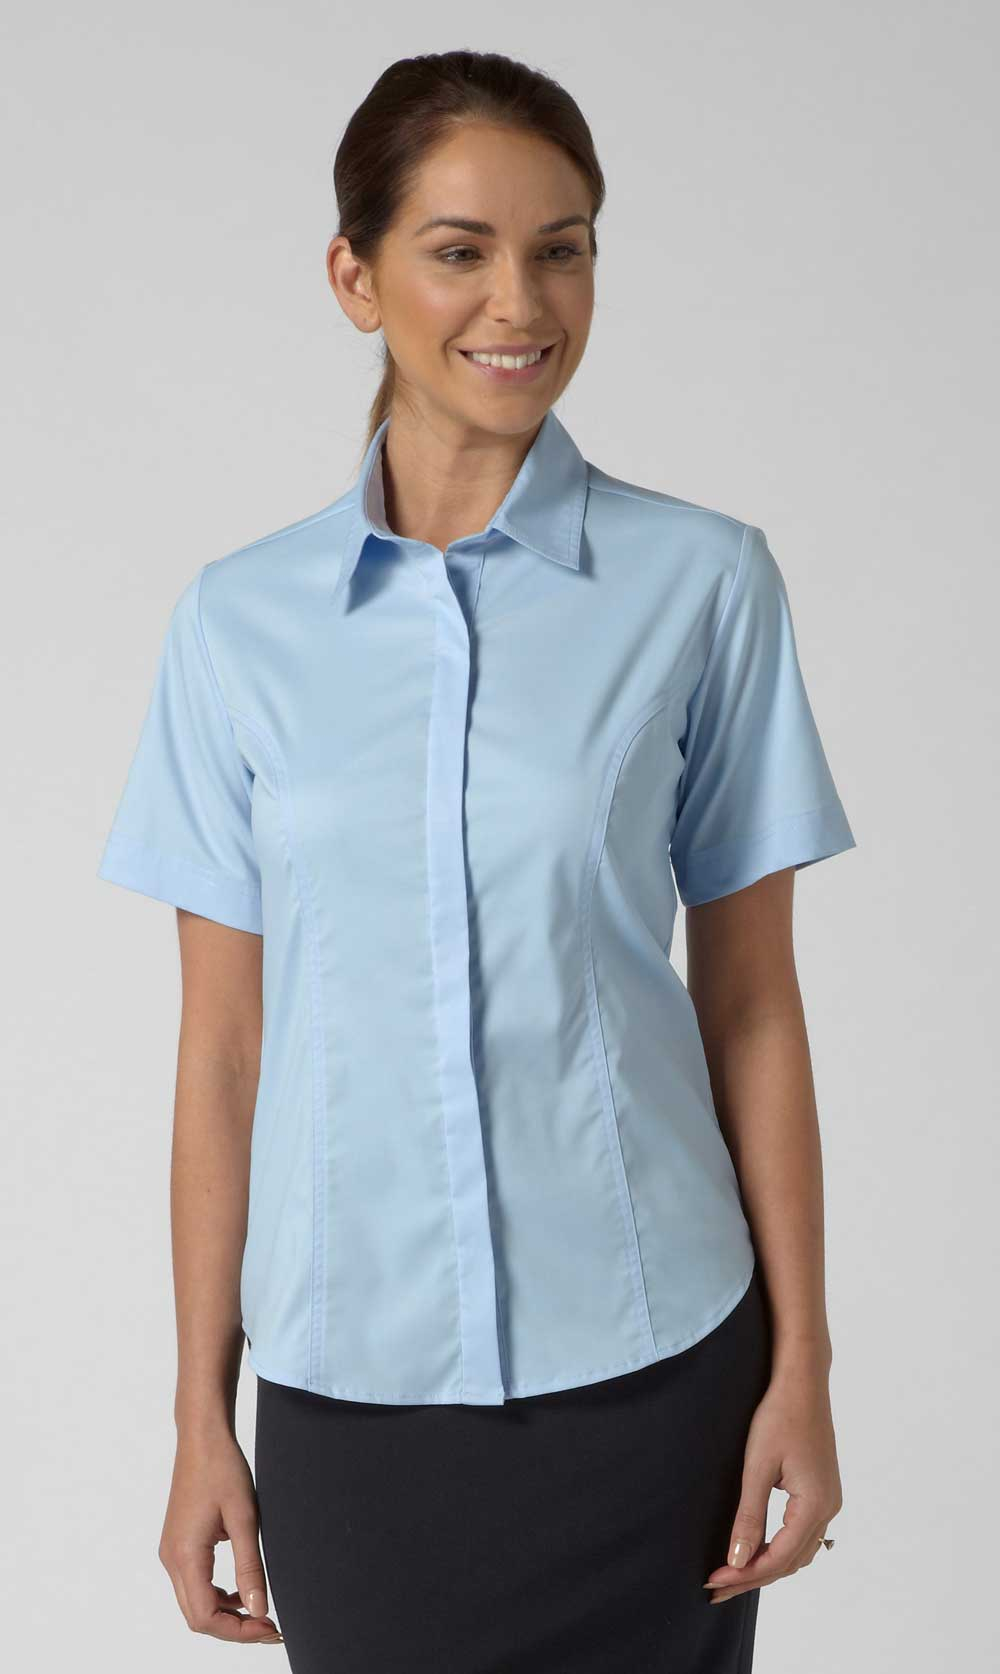 Vortex Designs ZOE Short Sleeve Shirt-0